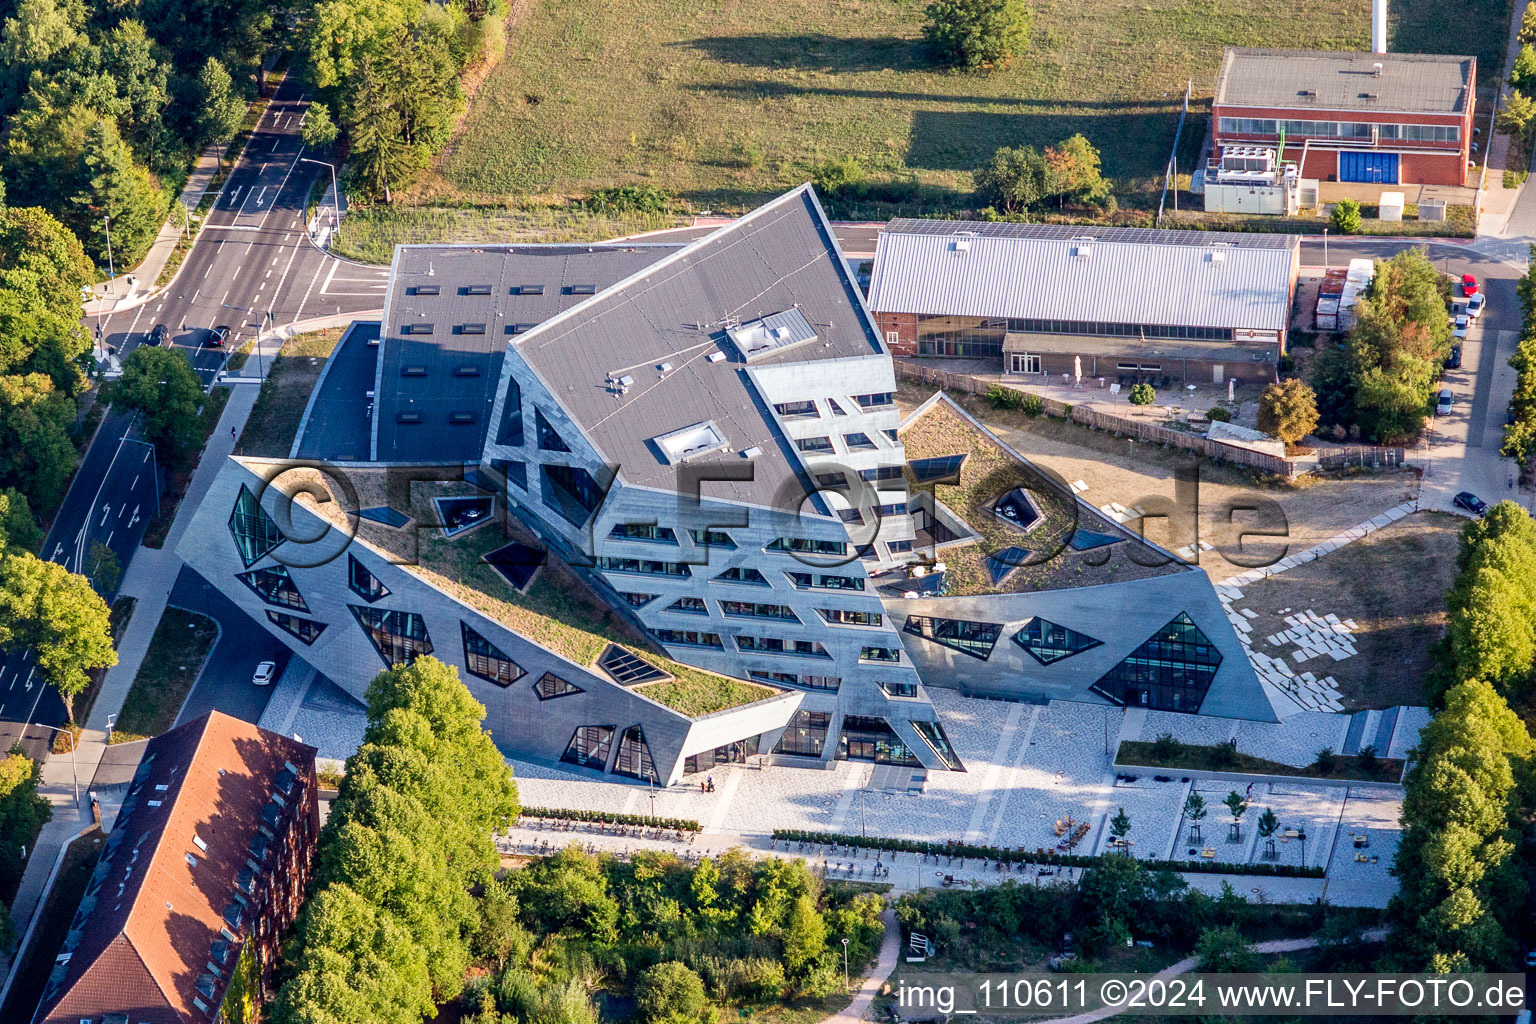 Bâtiment central de la zone universitaire du campus Leuphana University Lüneburg par l'architecte Libeskind à Lüneburg dans le département Basse-Saxe, Allemagne d'en haut